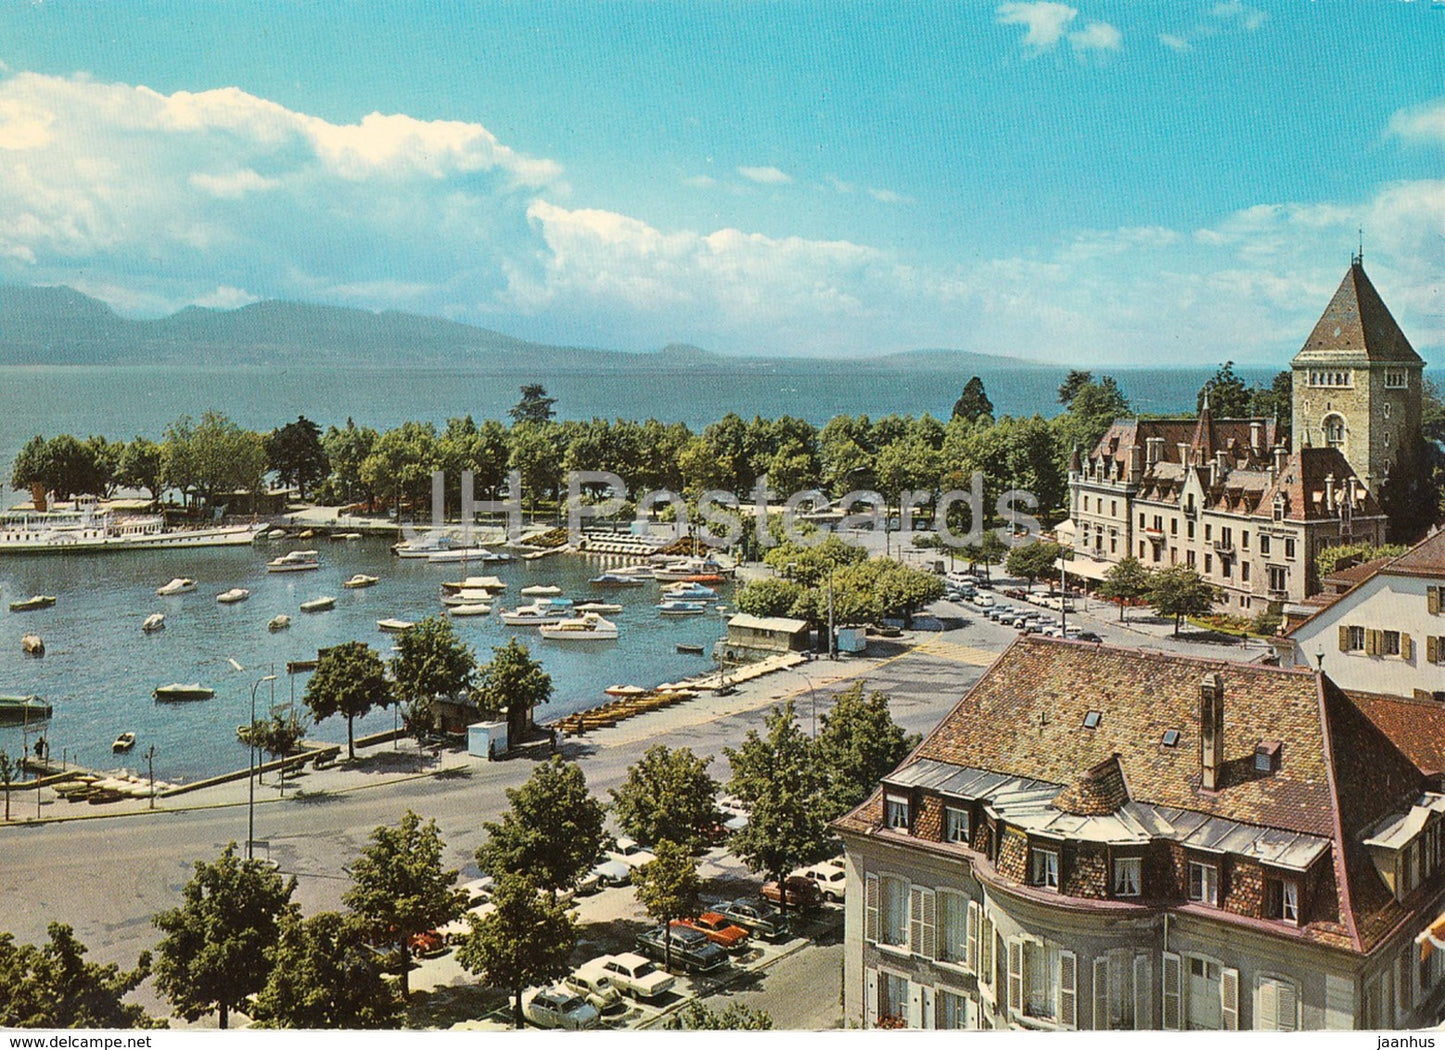 Lausanne Ouchy - Le Port d'Ouchy et le lac Leman - 1 - 4728 - Switzerland - unused - JH Postcards